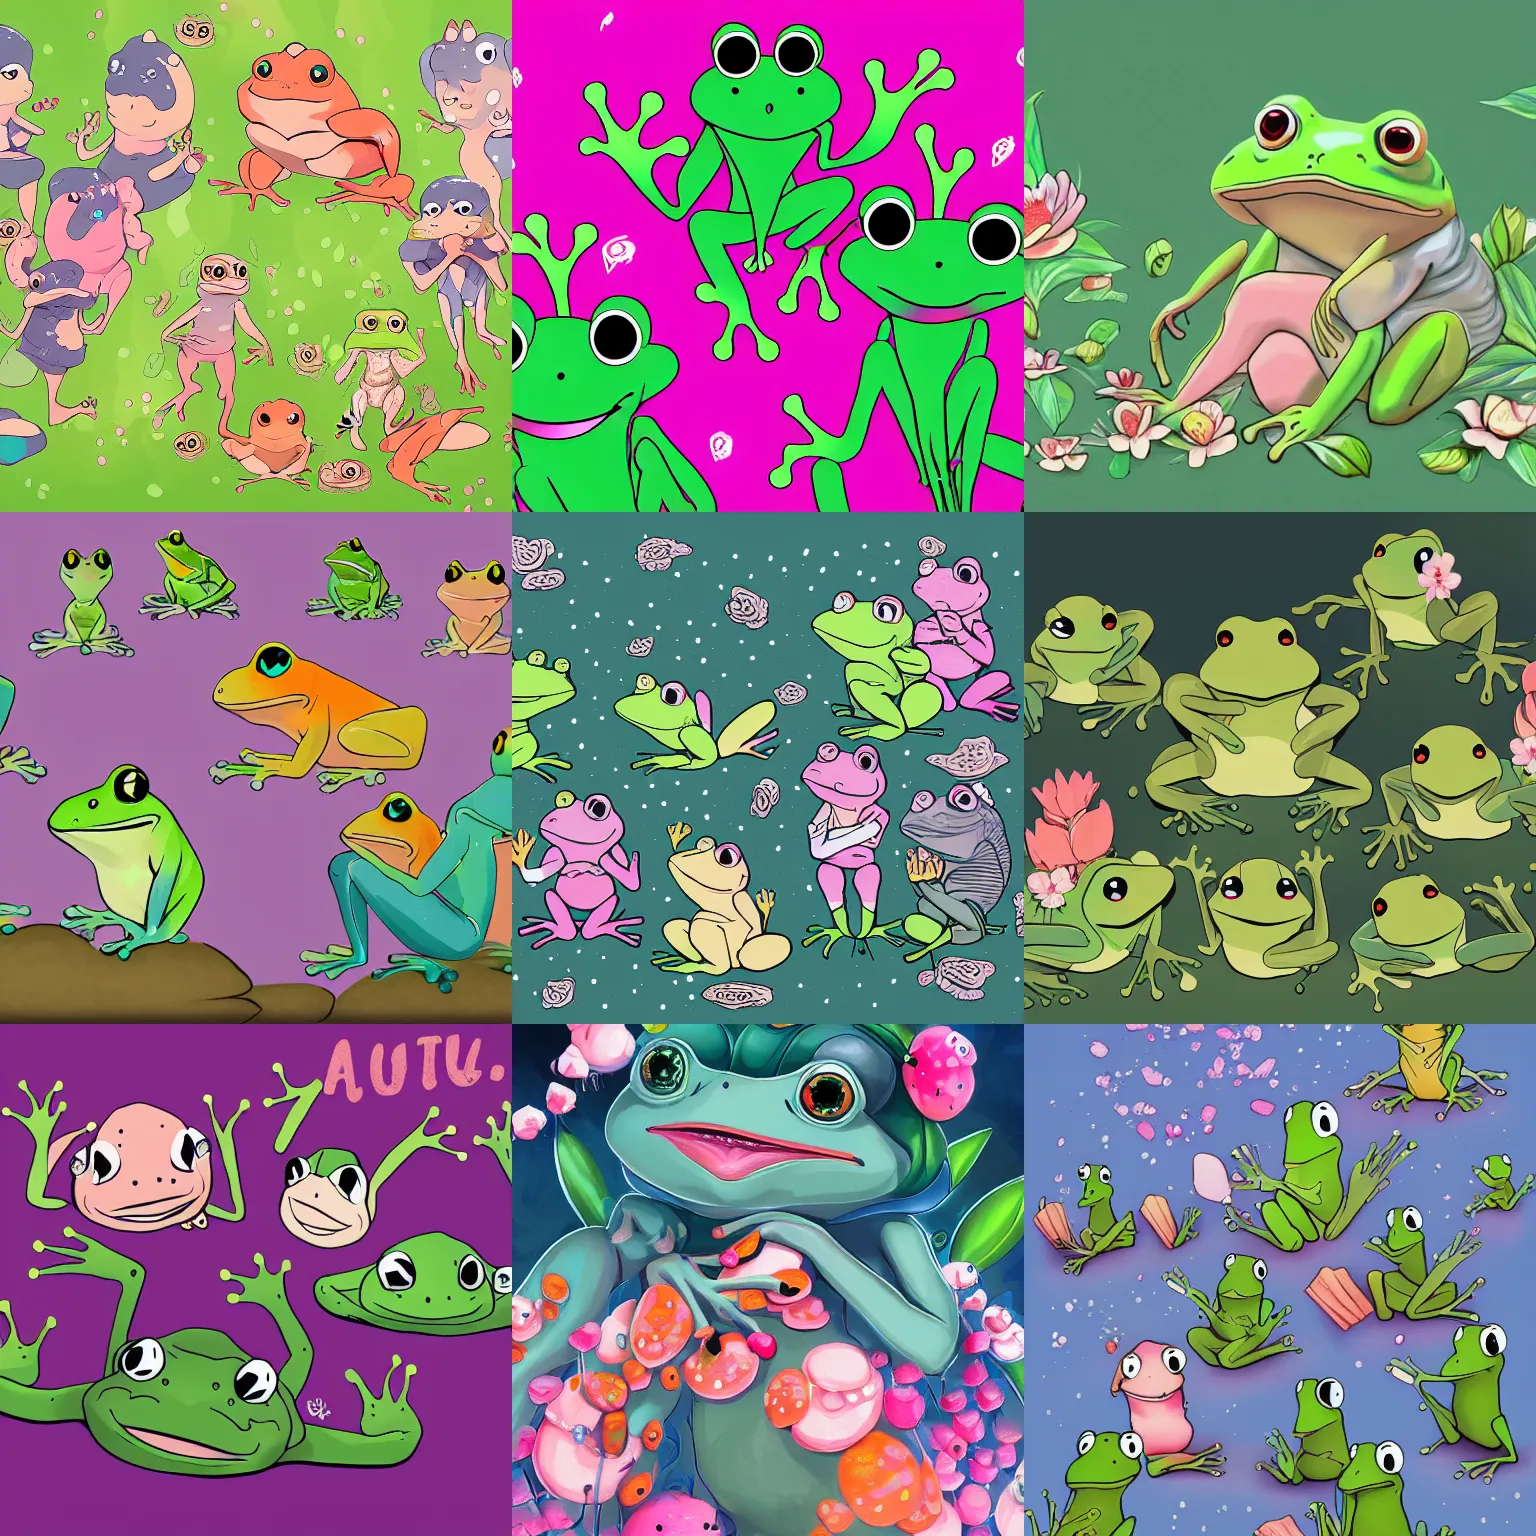 Prompt: numerous frog friends, digital art, cute, shoujo, trending on artstation, detailed, 4 k